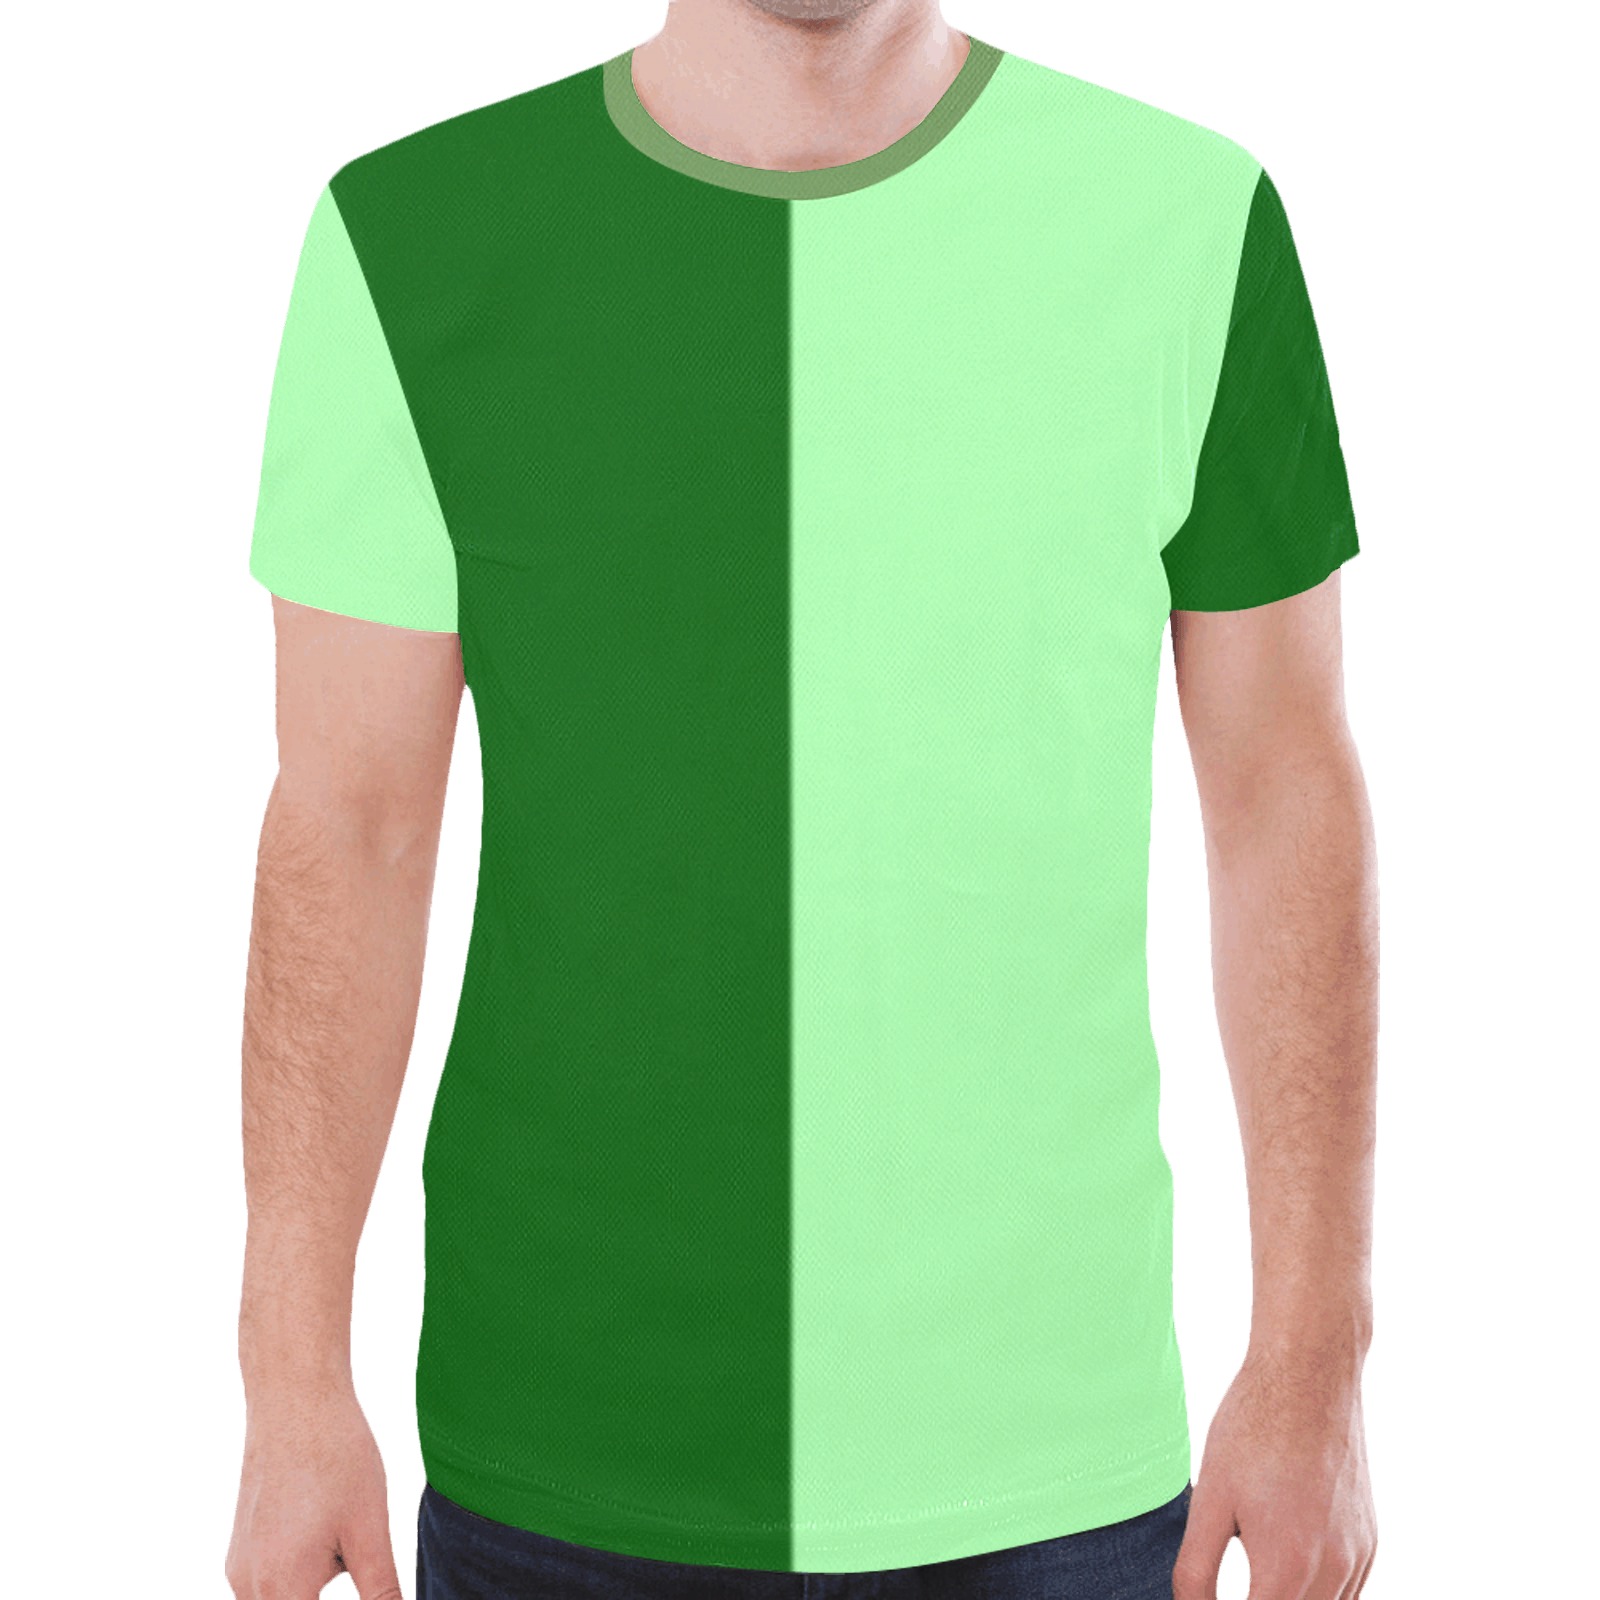 dkgreenhalf2 New All Over Print T-shirt for Men (Model T45)